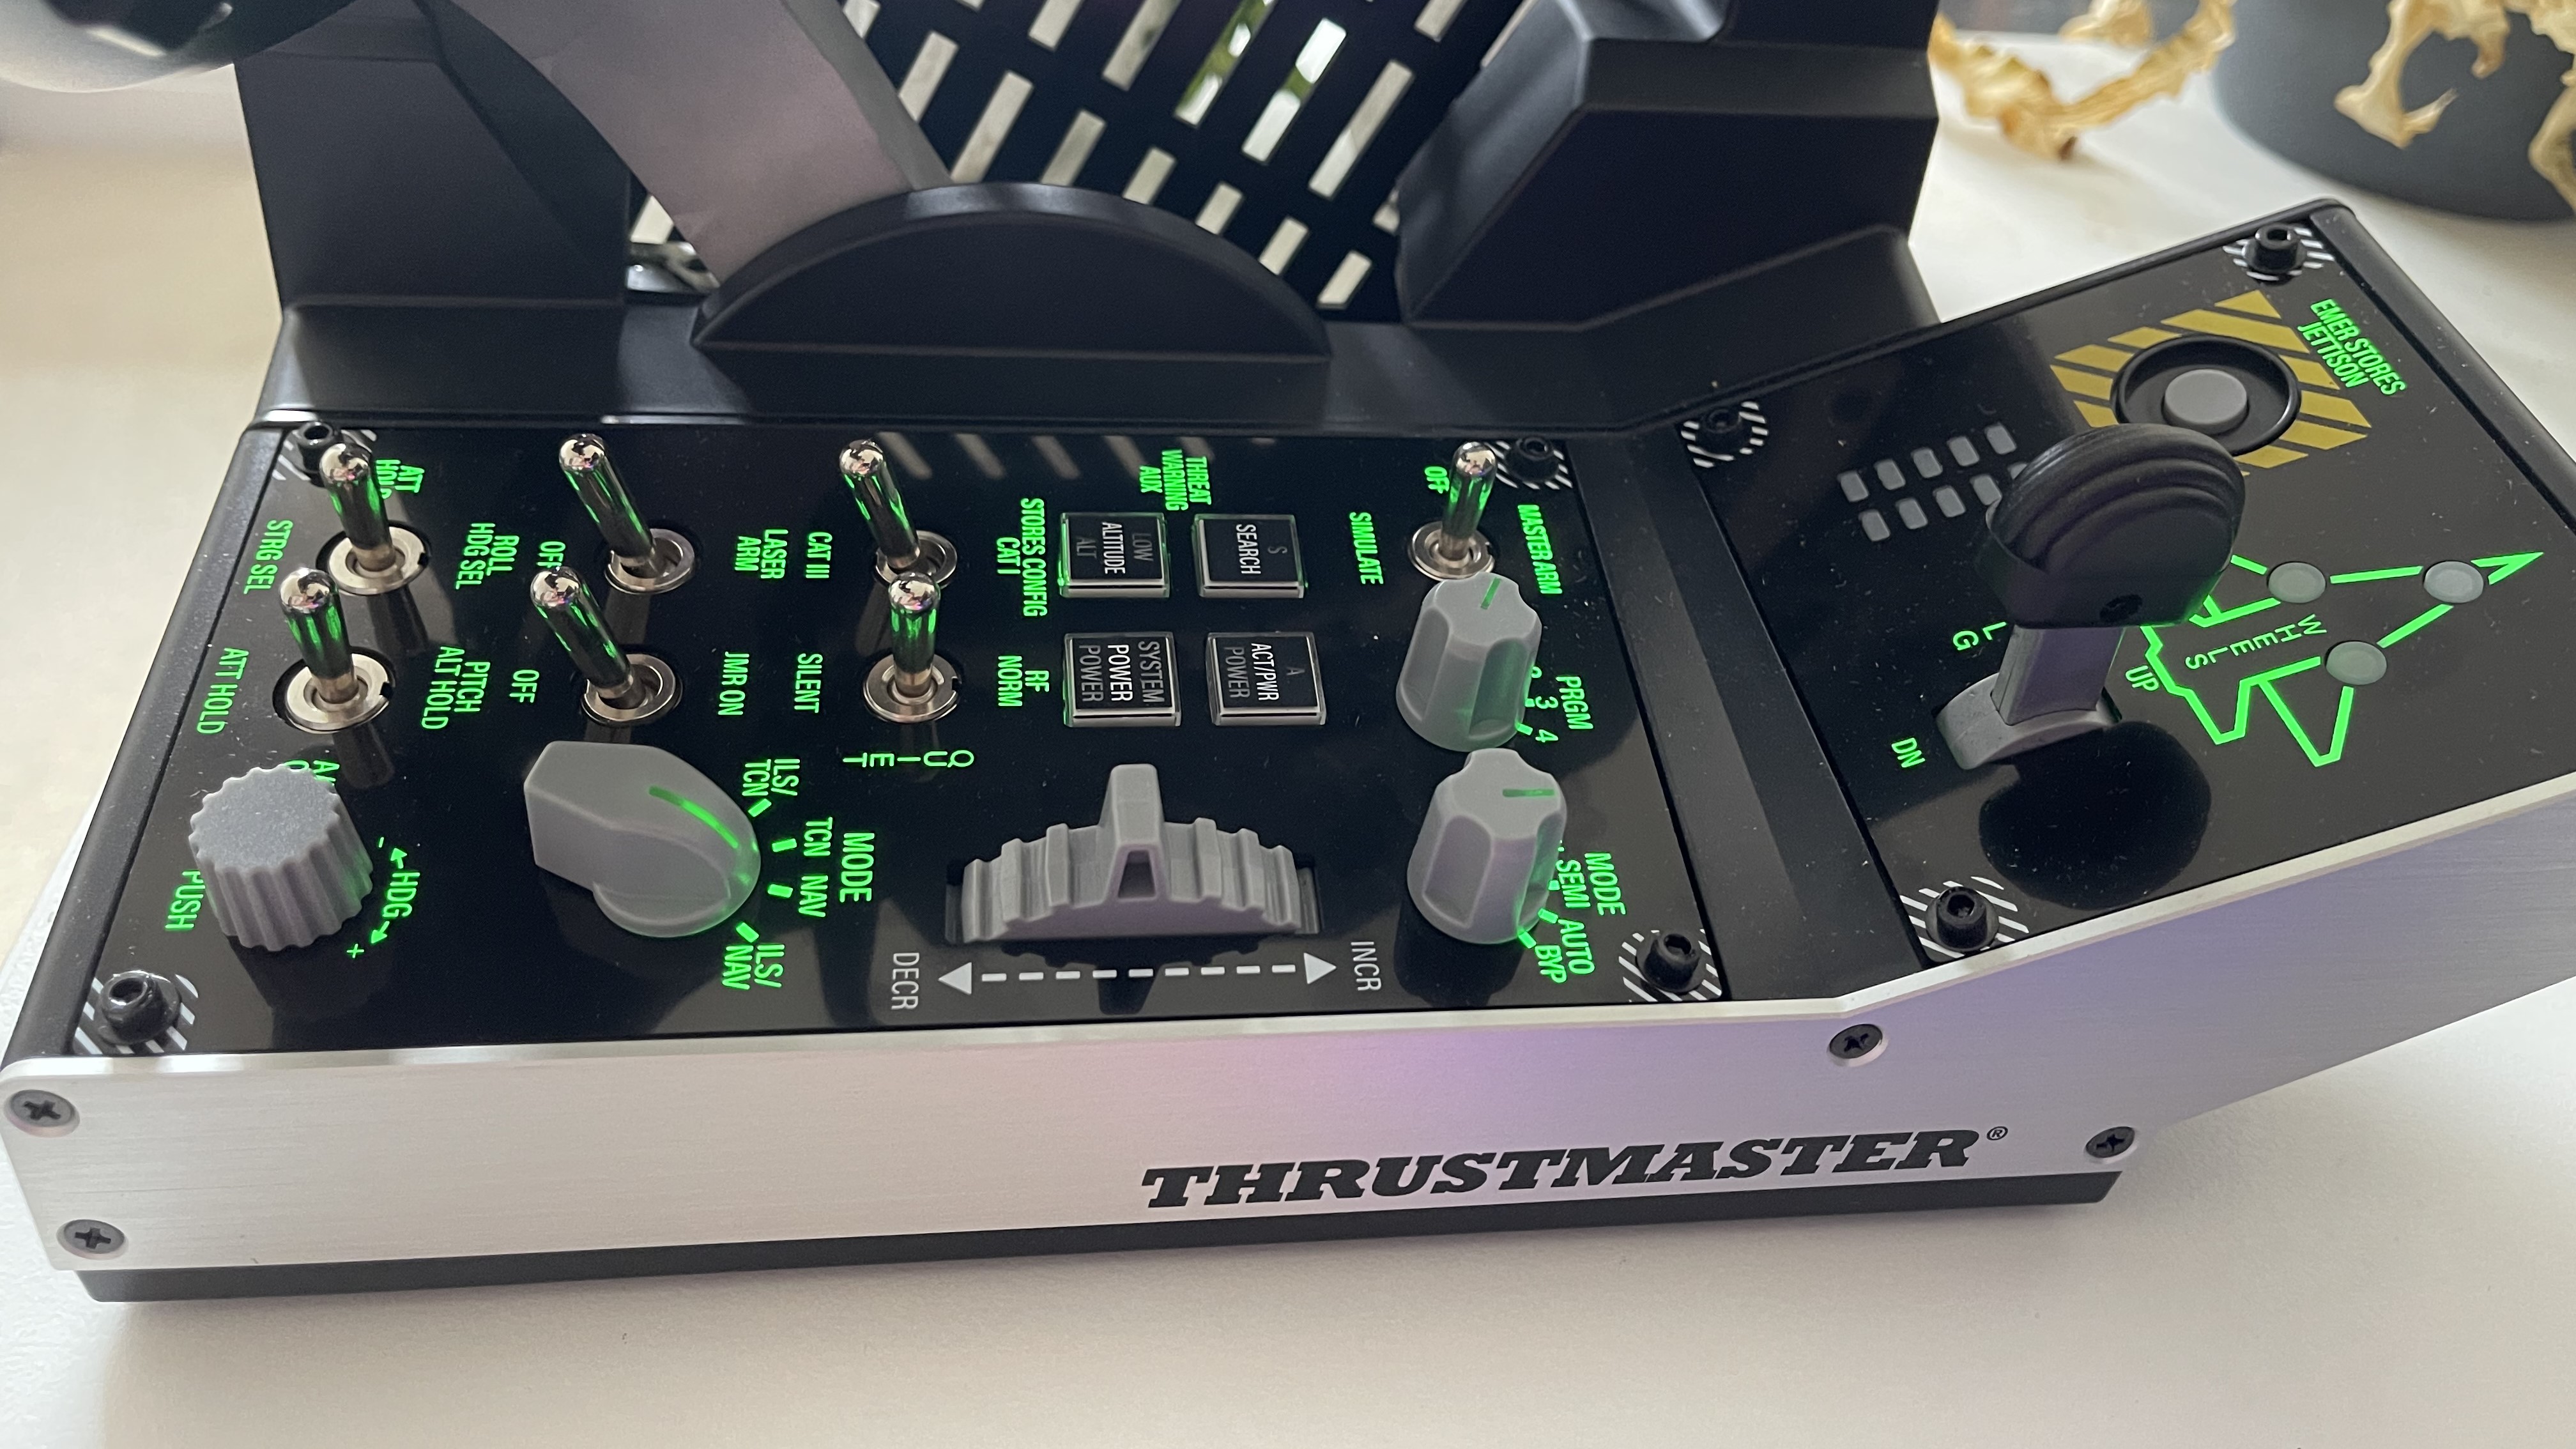 Thrustmaster Viper TQS controls